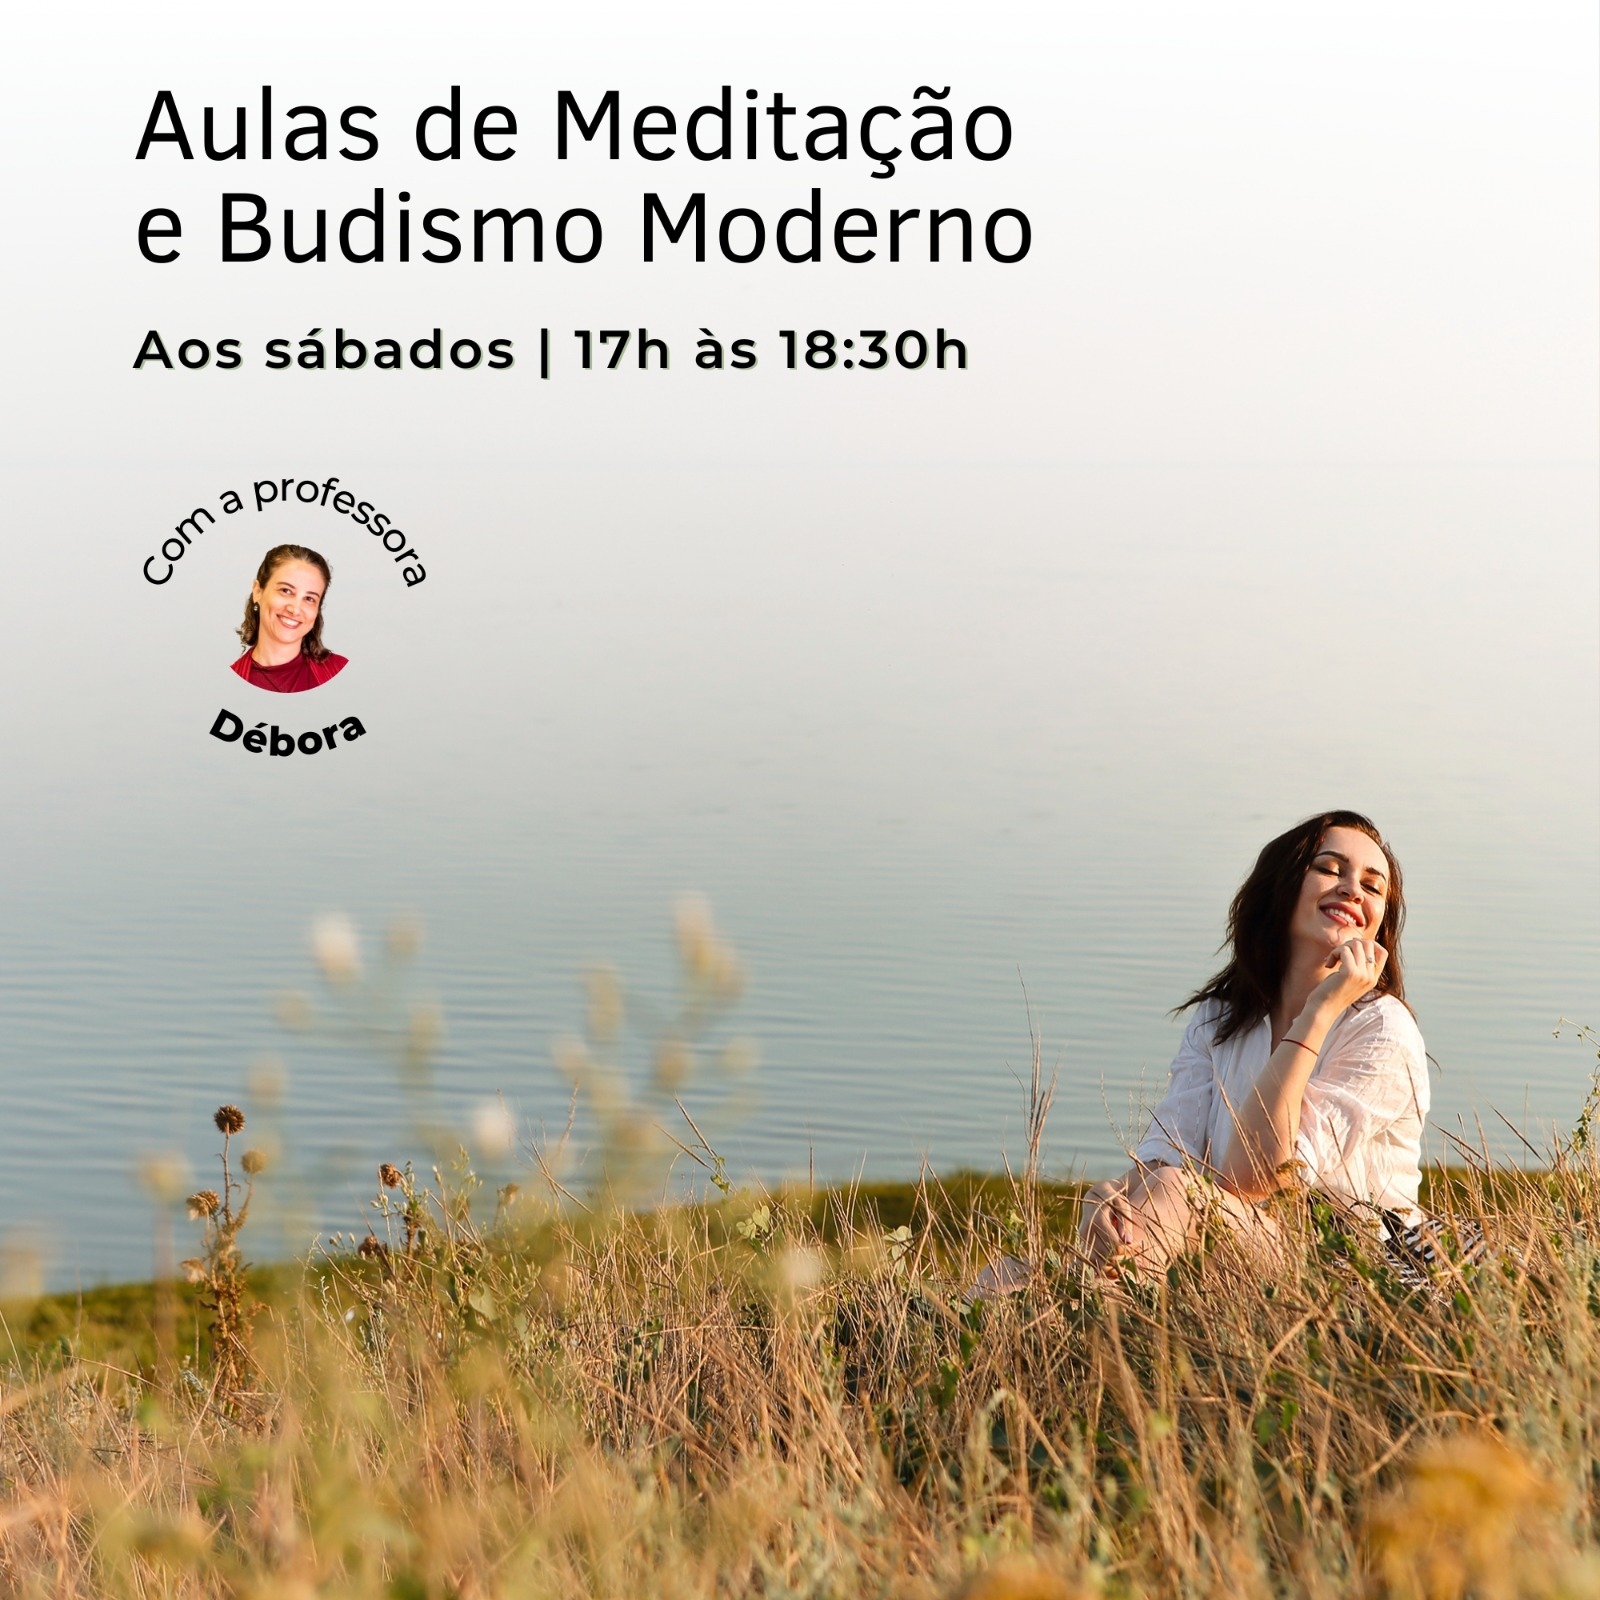 Aulas de Meditação e Budismo Moderno - Sábados às 17h